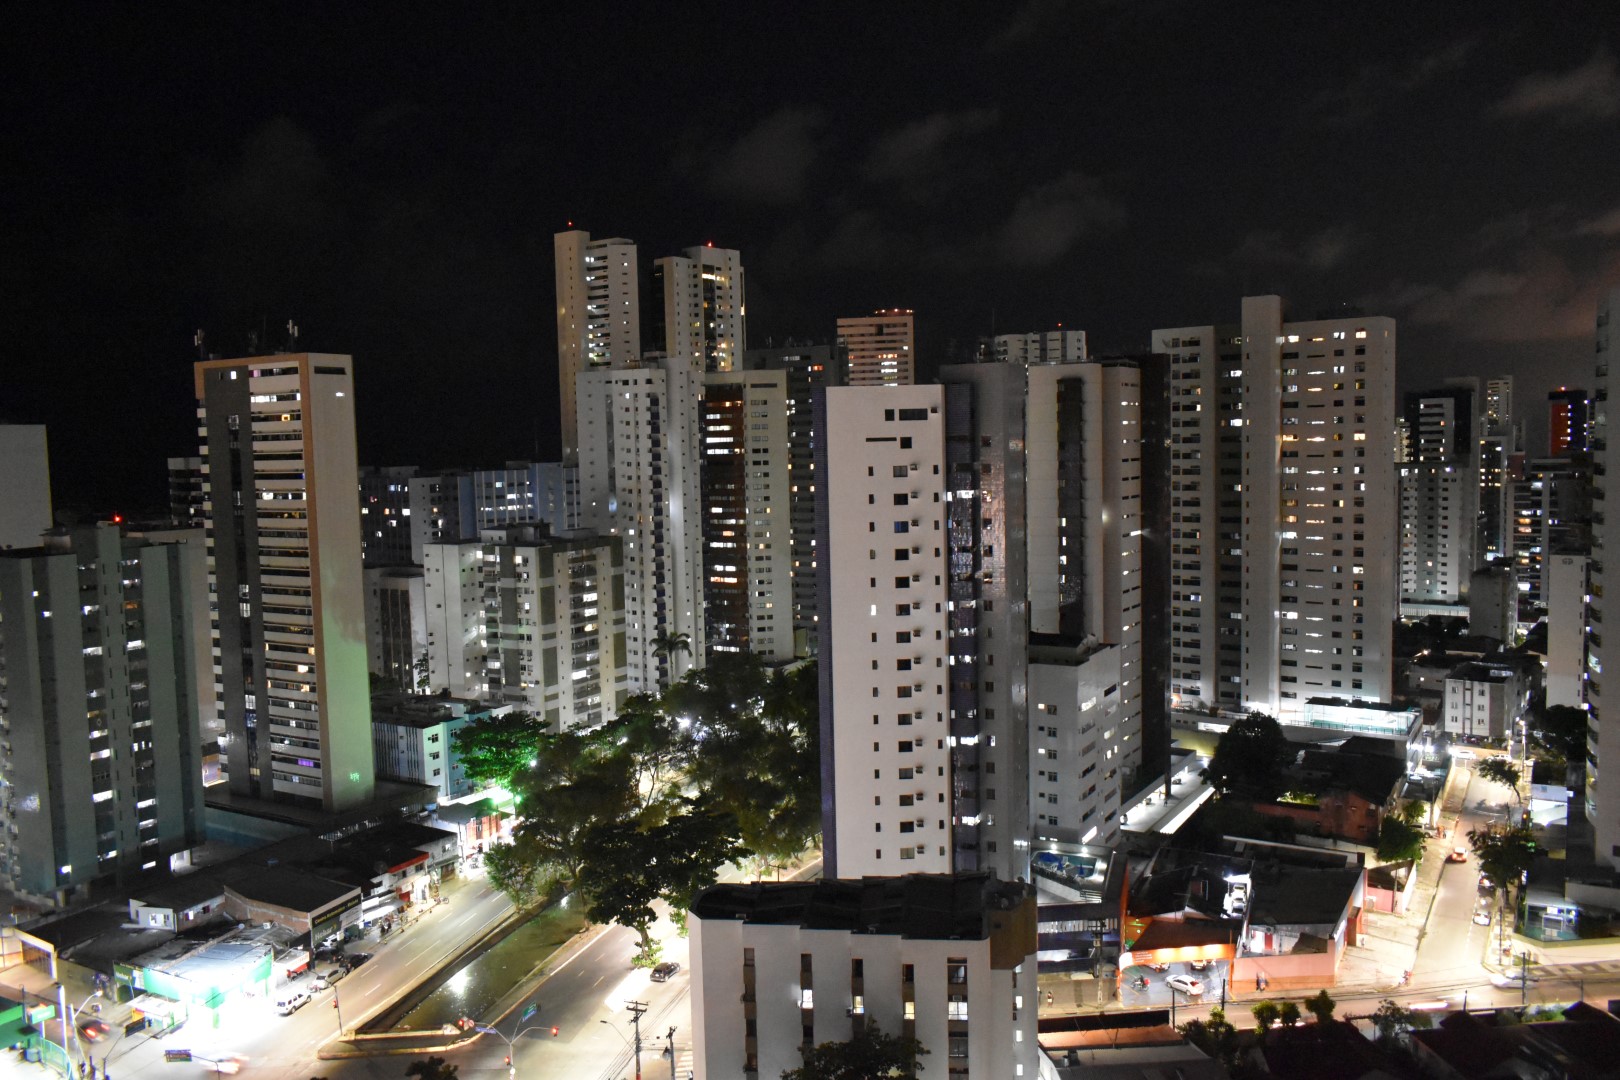 Taken from R. Visc. de Jequitinhonha, Boa Viagem, Recife